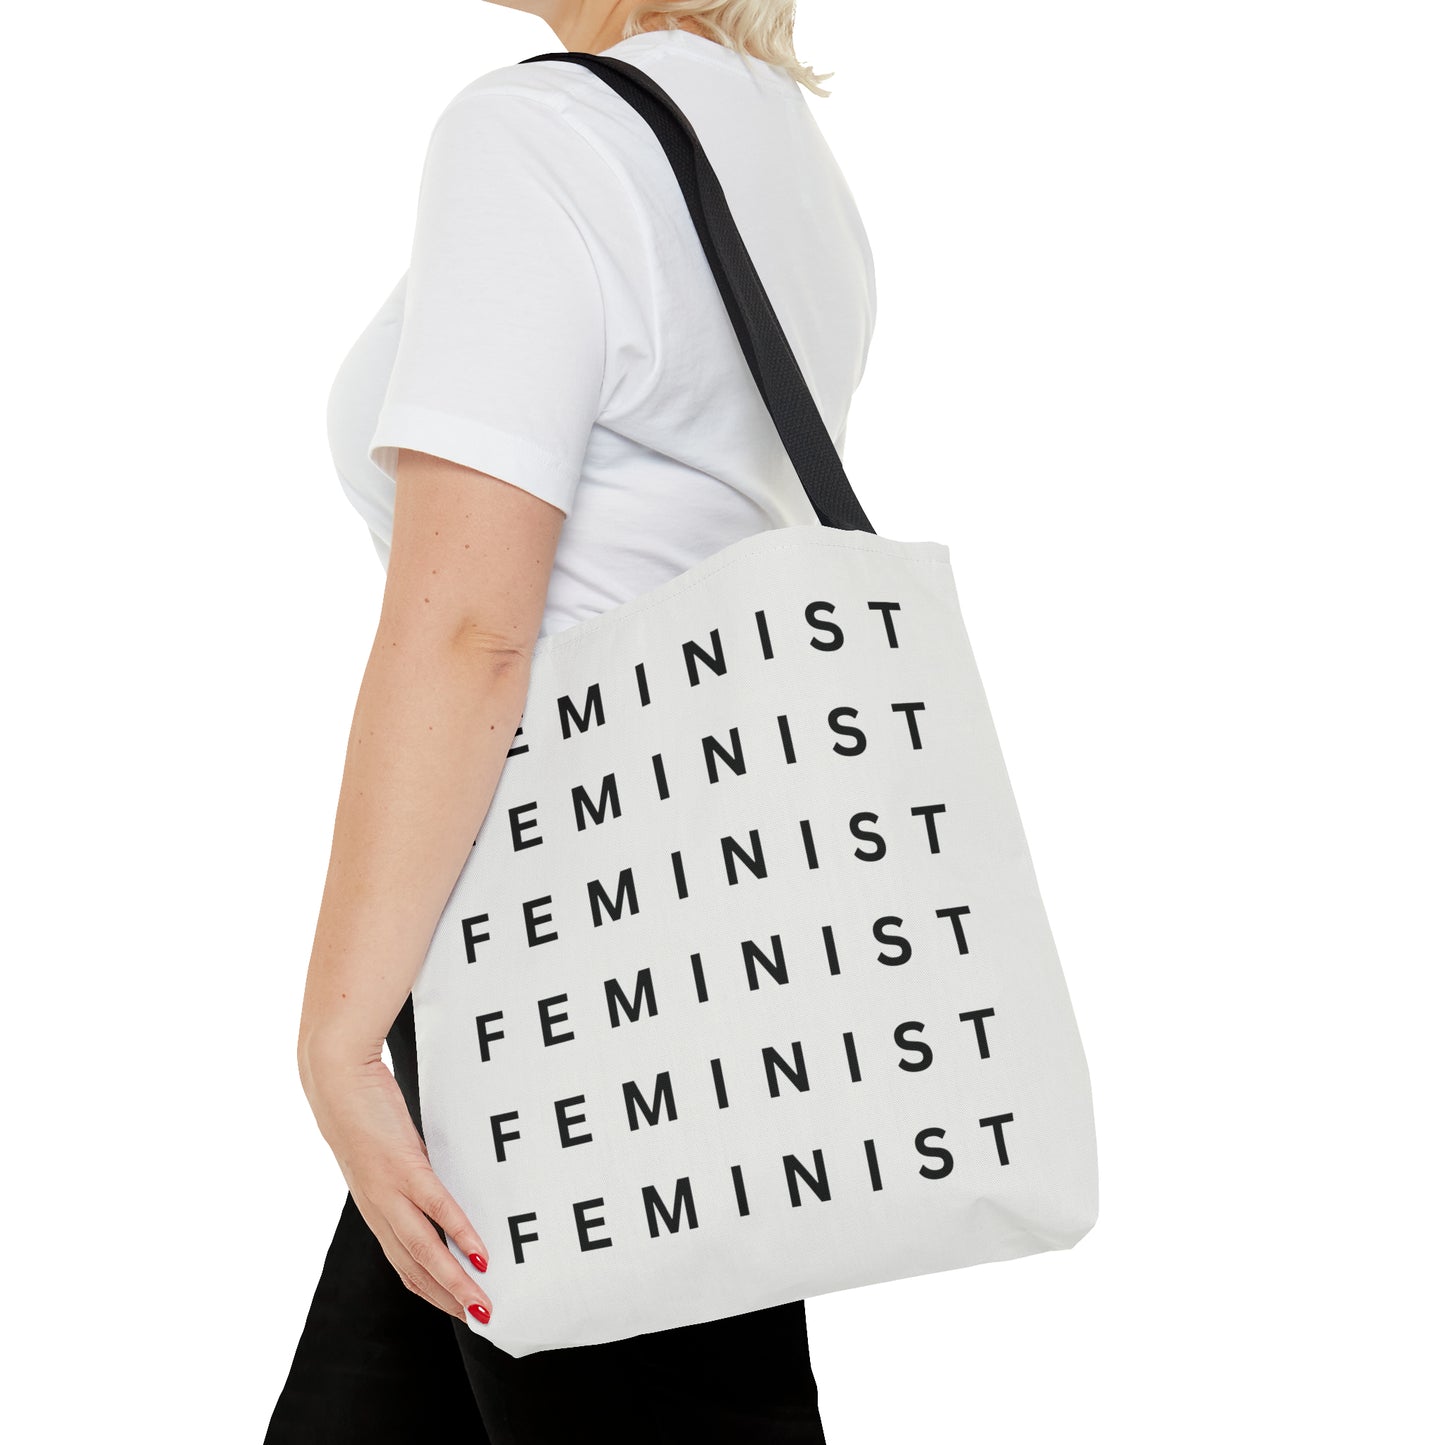 "Feminist" - Tote Bag